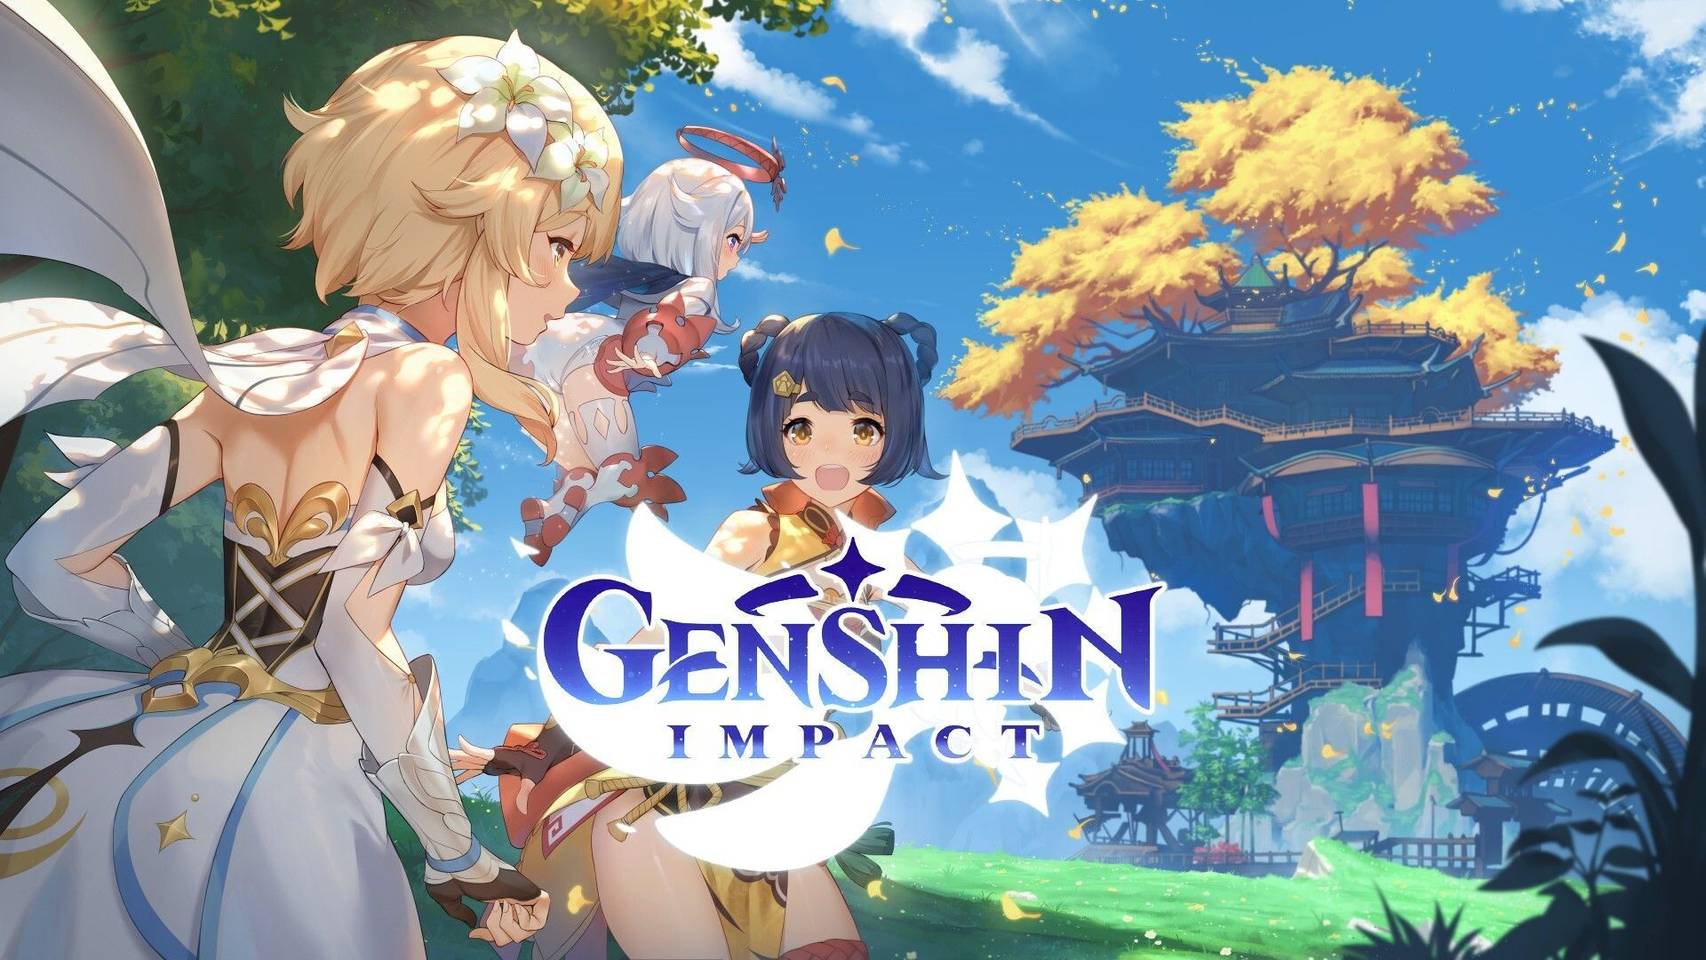 Imagem apresentando o nome "Genshin Impact", mais três personagens jogáveis e uma cidade em cima de uma árvore